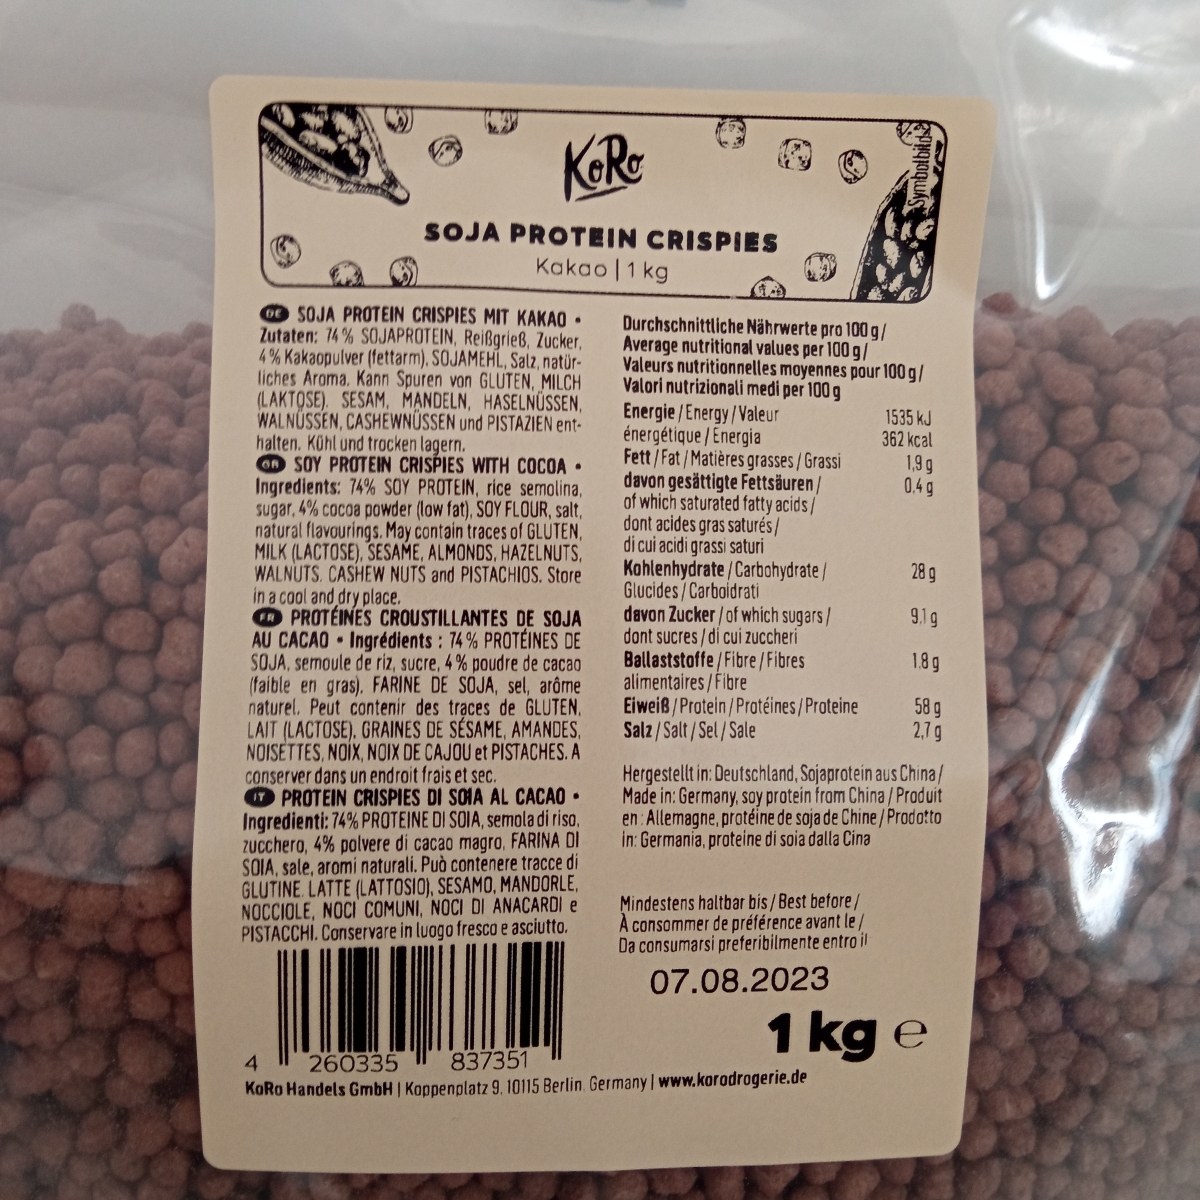 KoRo Crispies aux protéines de soja (77% de protéines) 1 kg